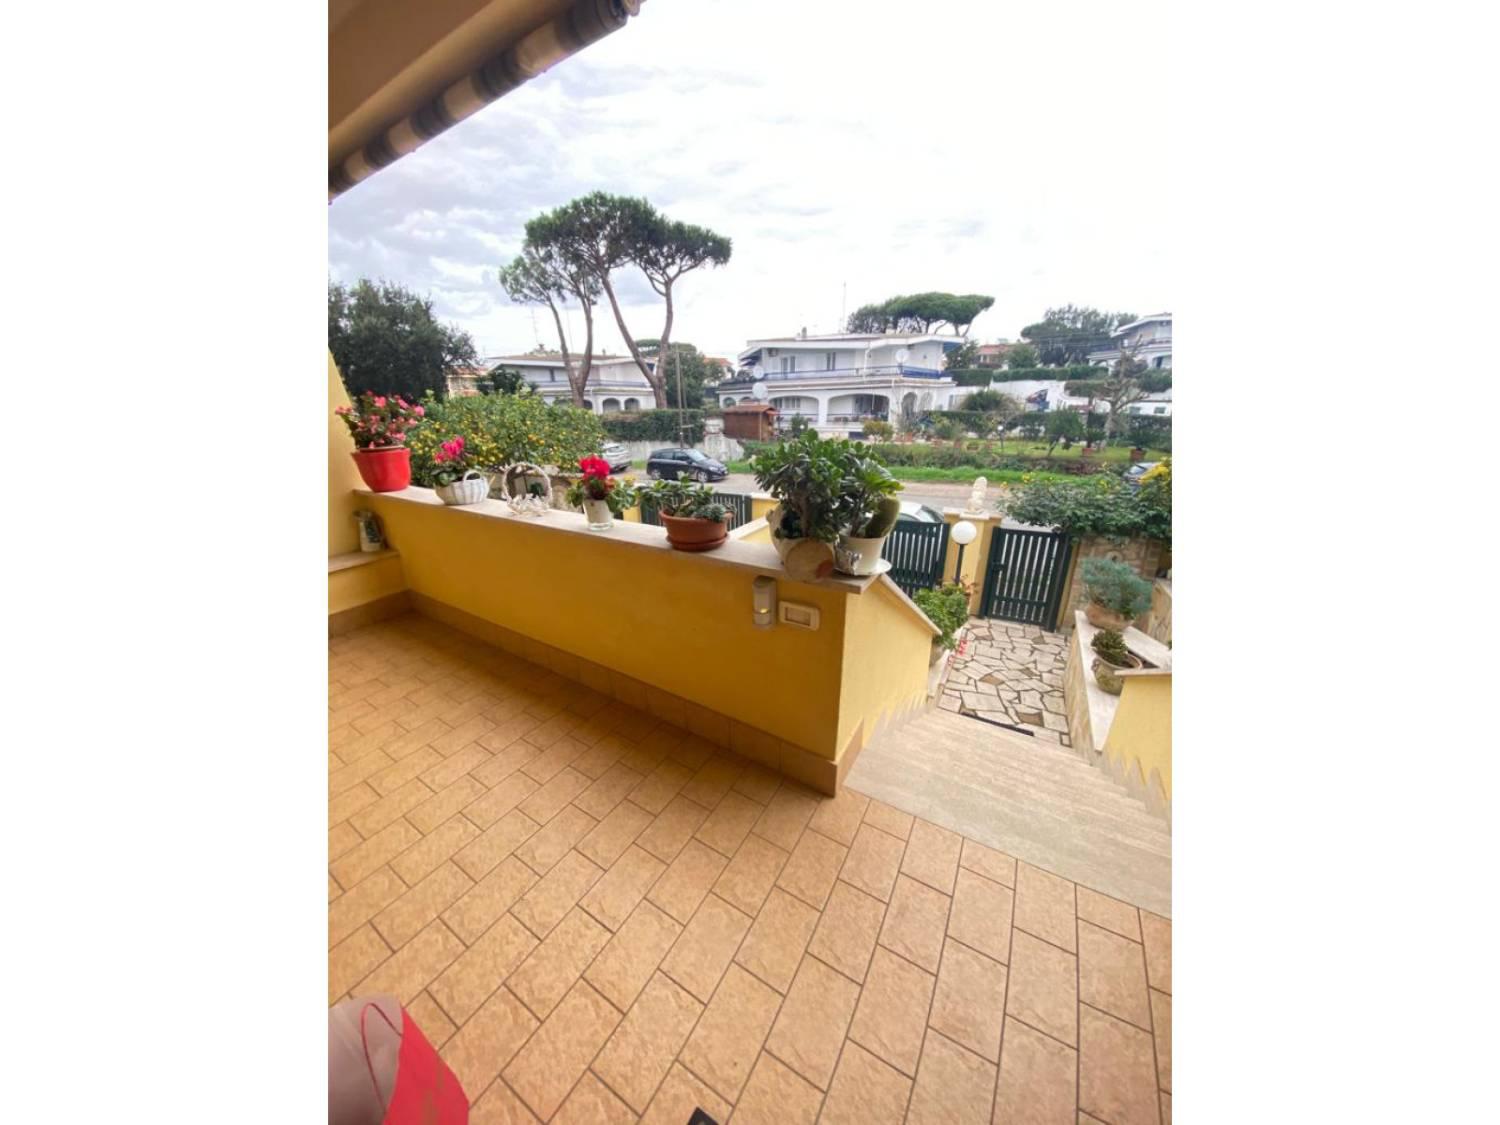 Villa Tri-Quadrifamiliare in vendita a Anzio, 4 locali, prezzo € 229.000 | CambioCasa.it